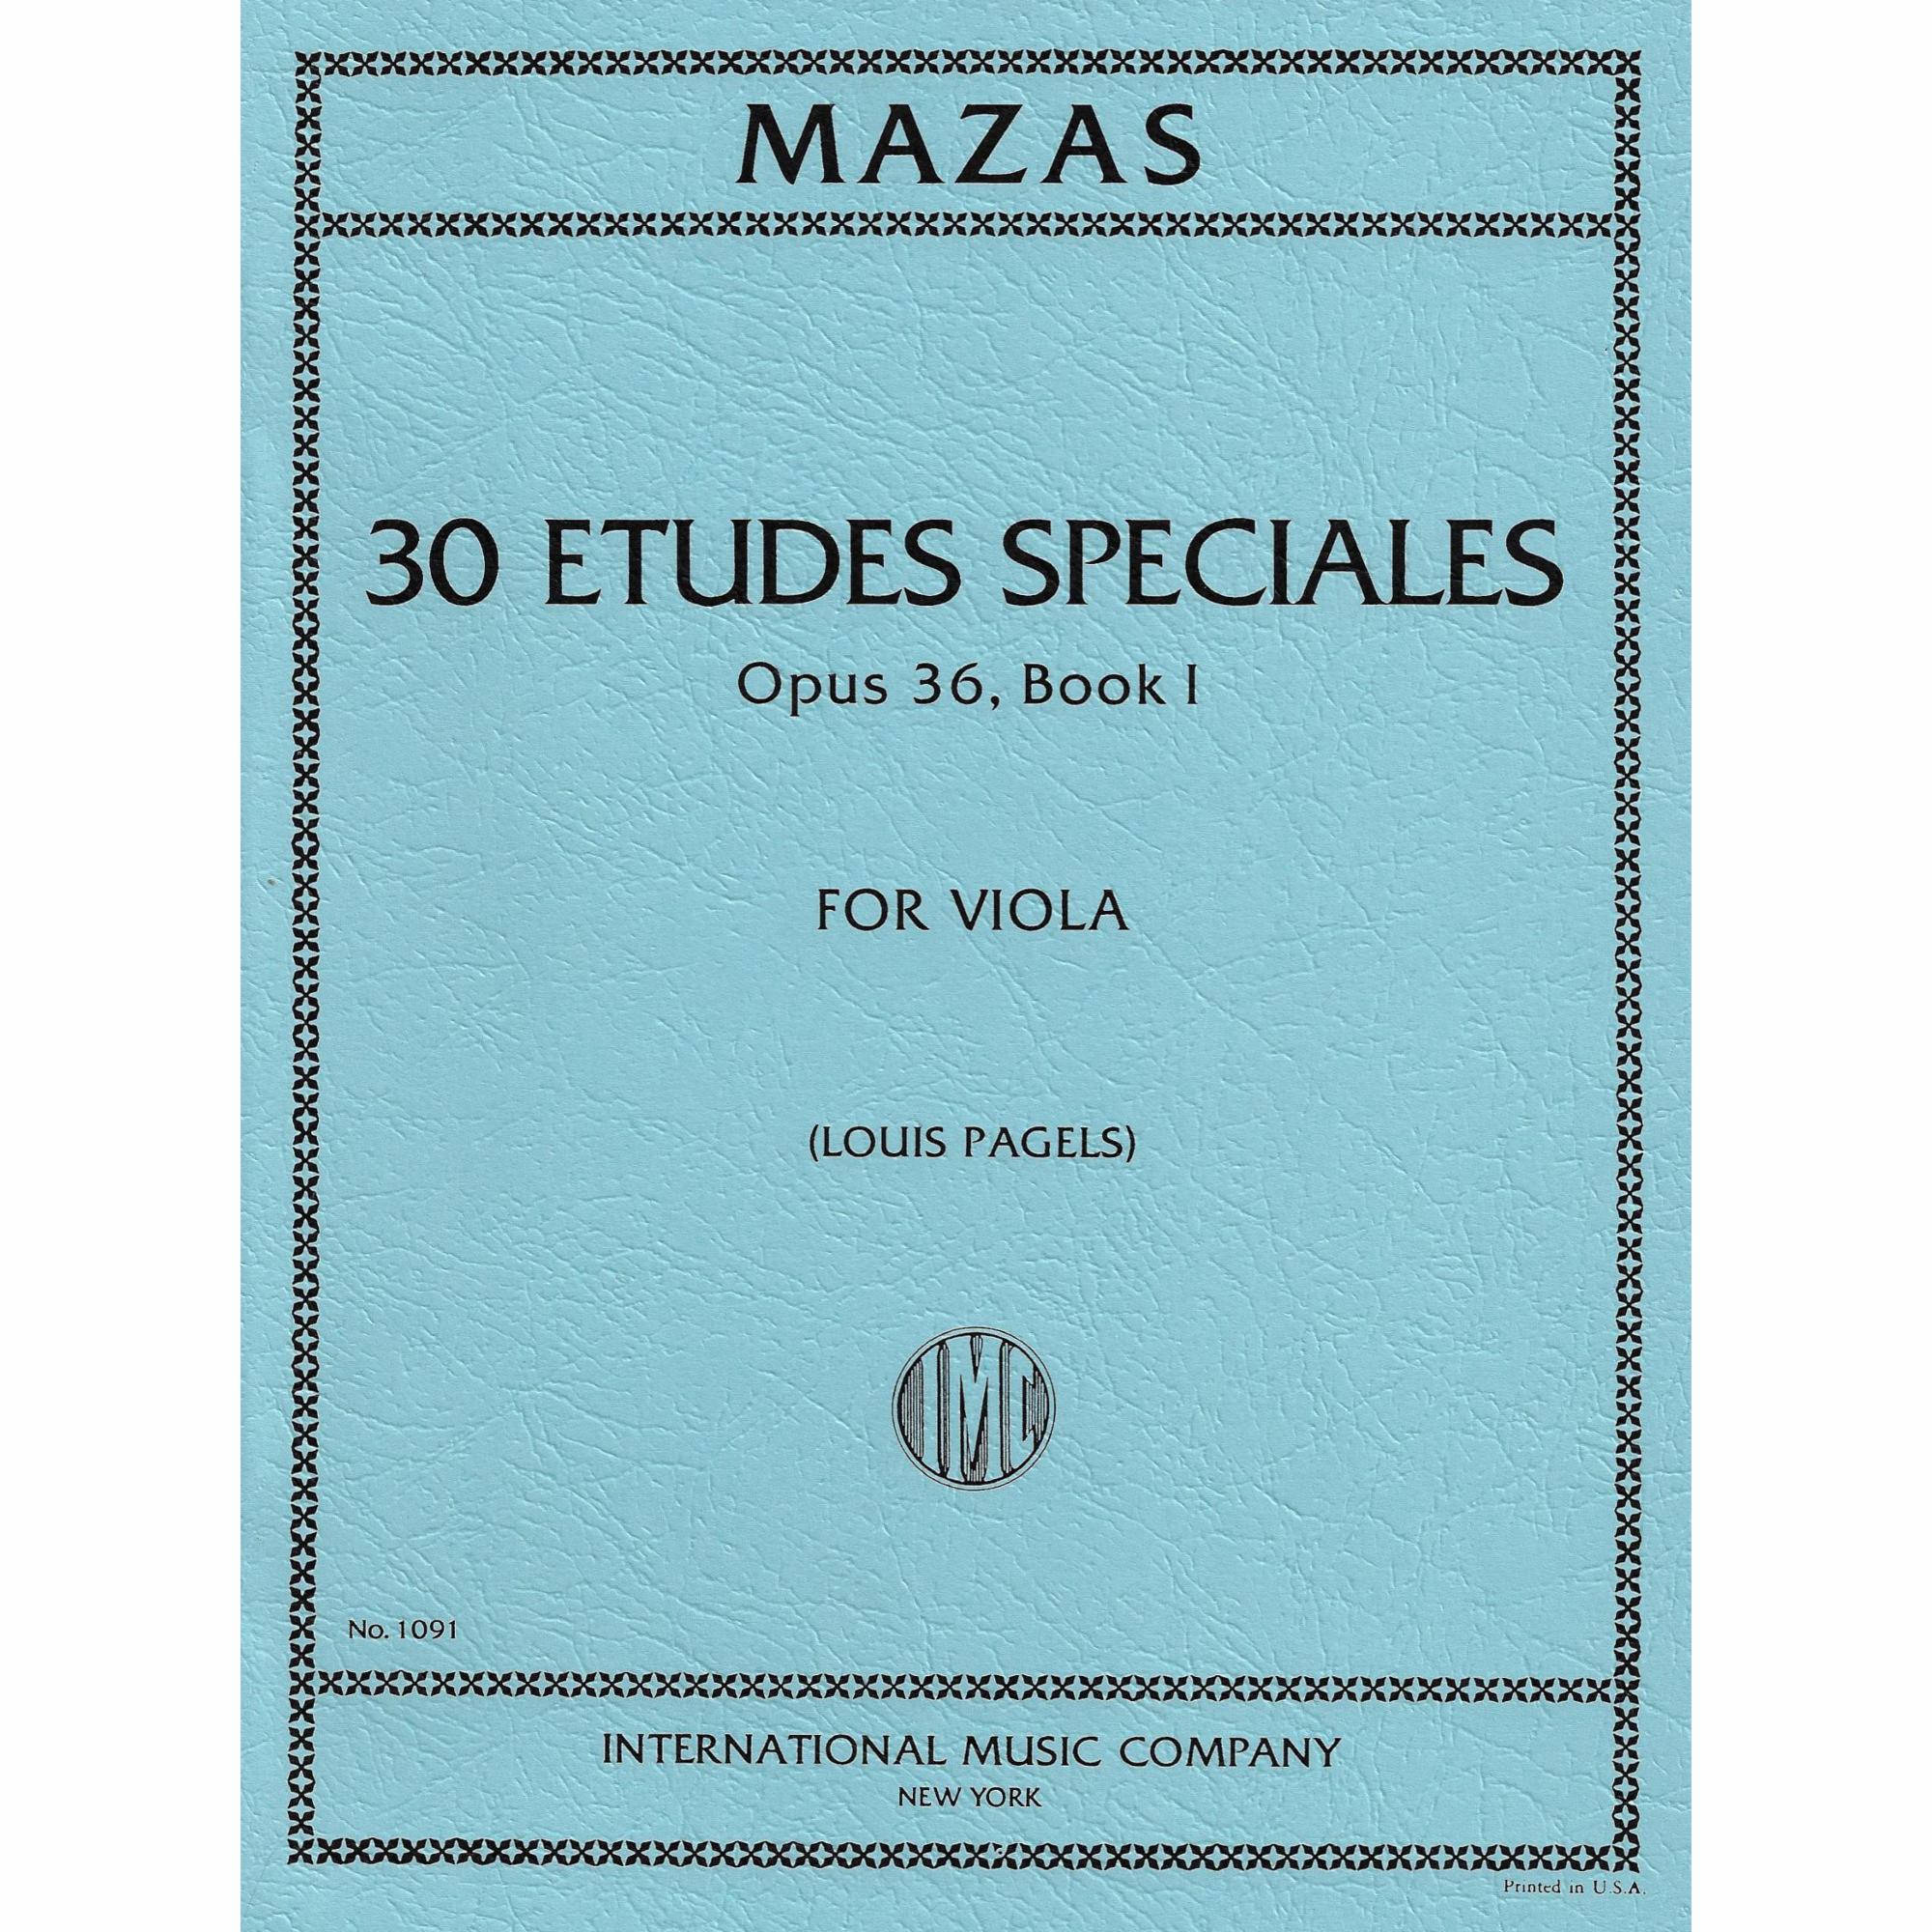 Mazas -- Etudes Speciales and Brillantes, Op. 36, Books 1-2 for Viola